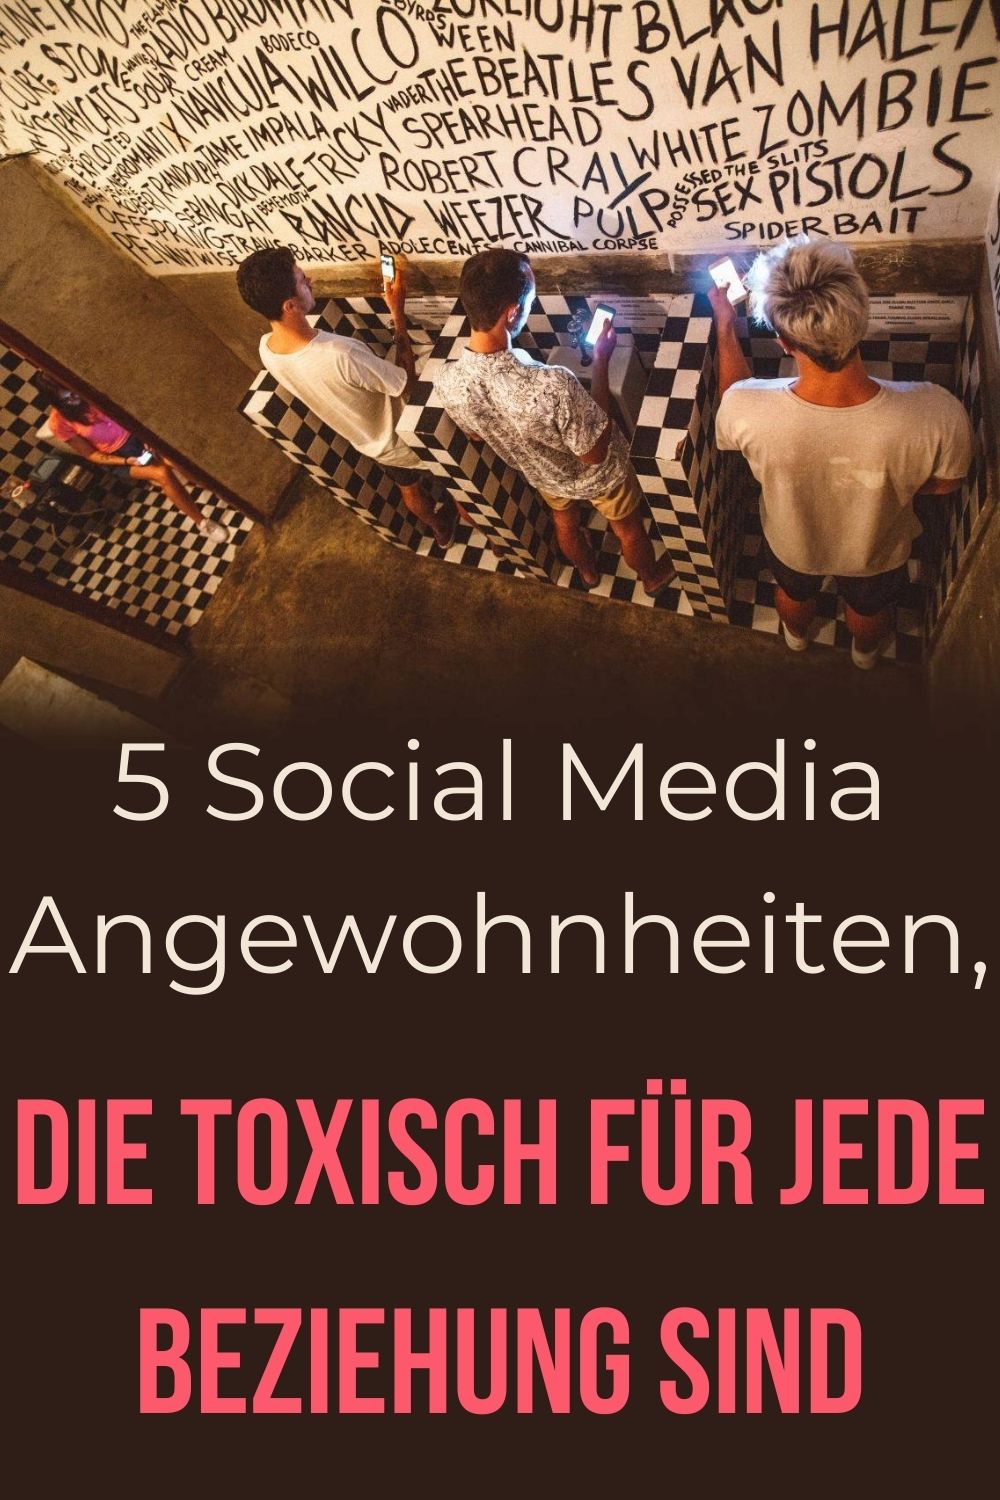 5-Social-Media-Angewohnheiten-die-toxisch-fuer-jede-Beziehung-sind